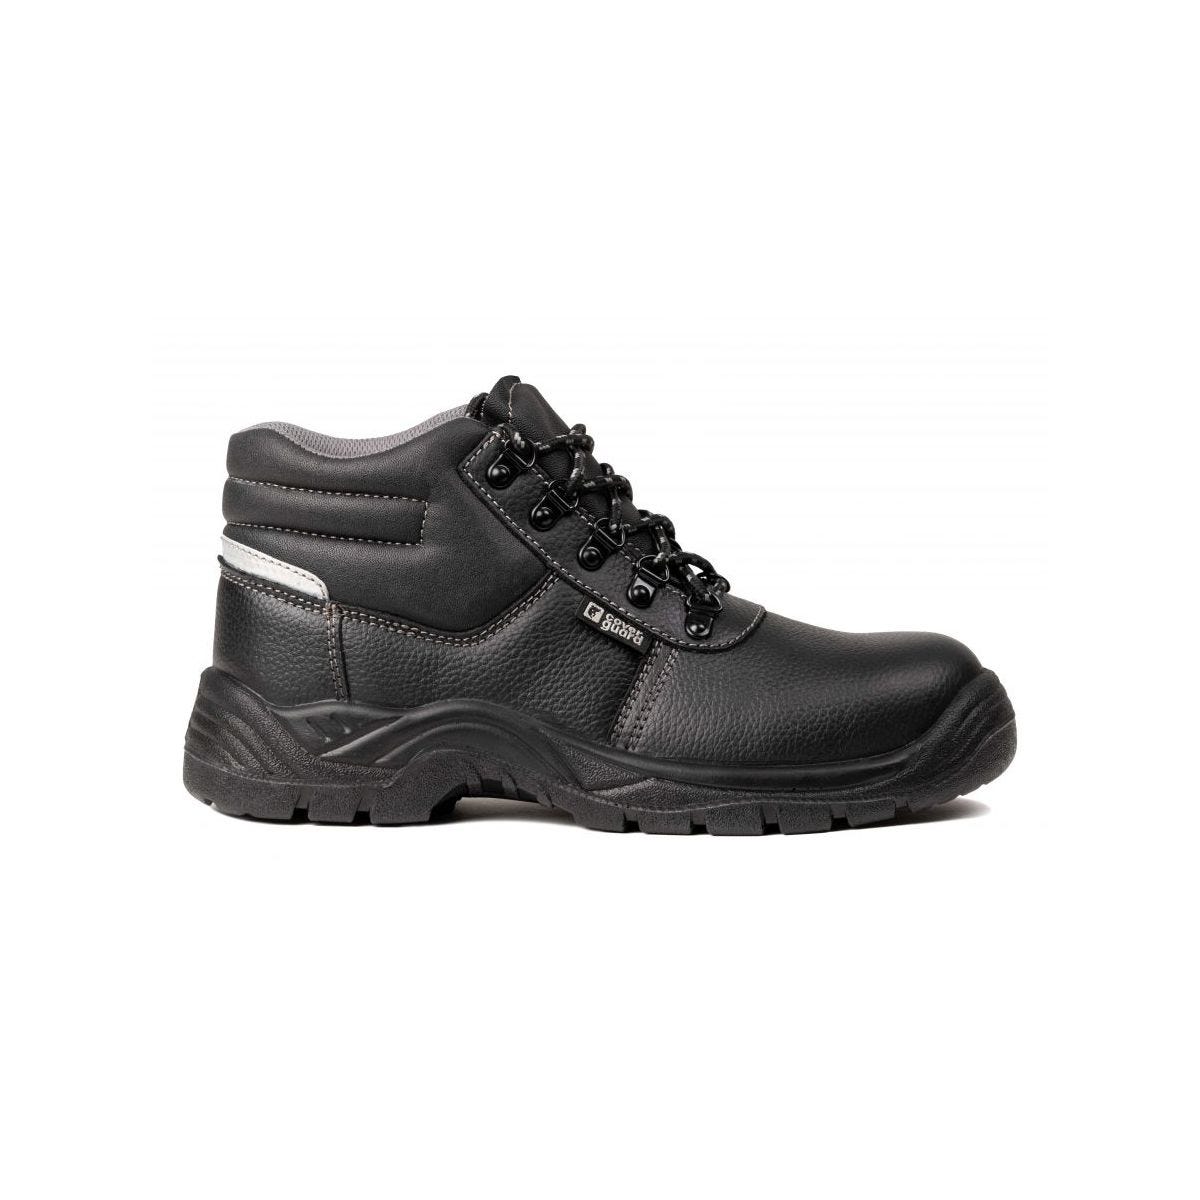 Chaussures de sécurité hautes AGATE II S3 Noir - Coverguard - Taille 40 2